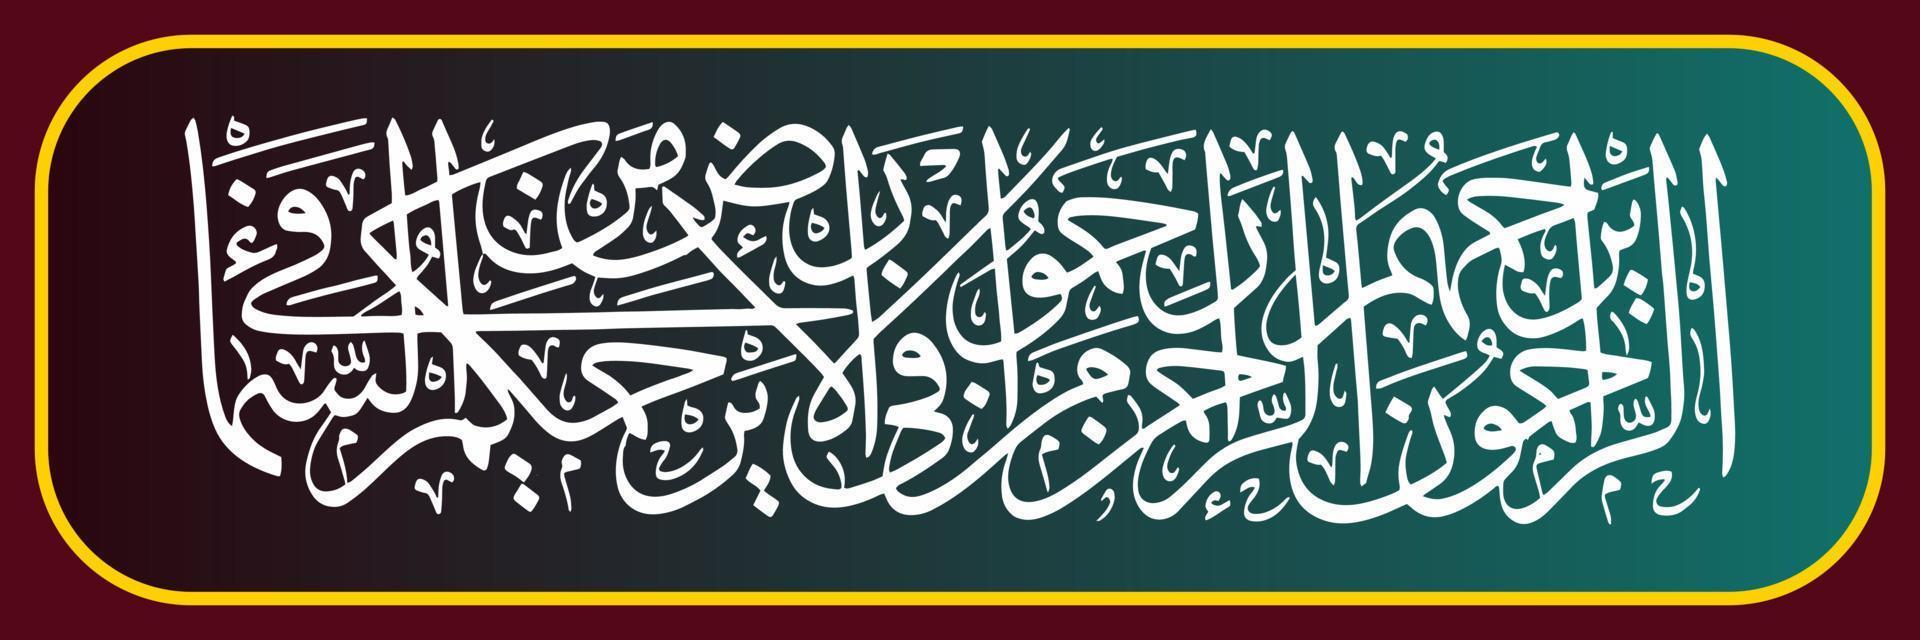 caligrafía árabe, traducción aquellos que son misericordiosos, serán amados por allah, el rahman. por tanto, amad a todas las criaturas de la tierra, seguramente todas las criaturas del cielo os amarán a todos vector